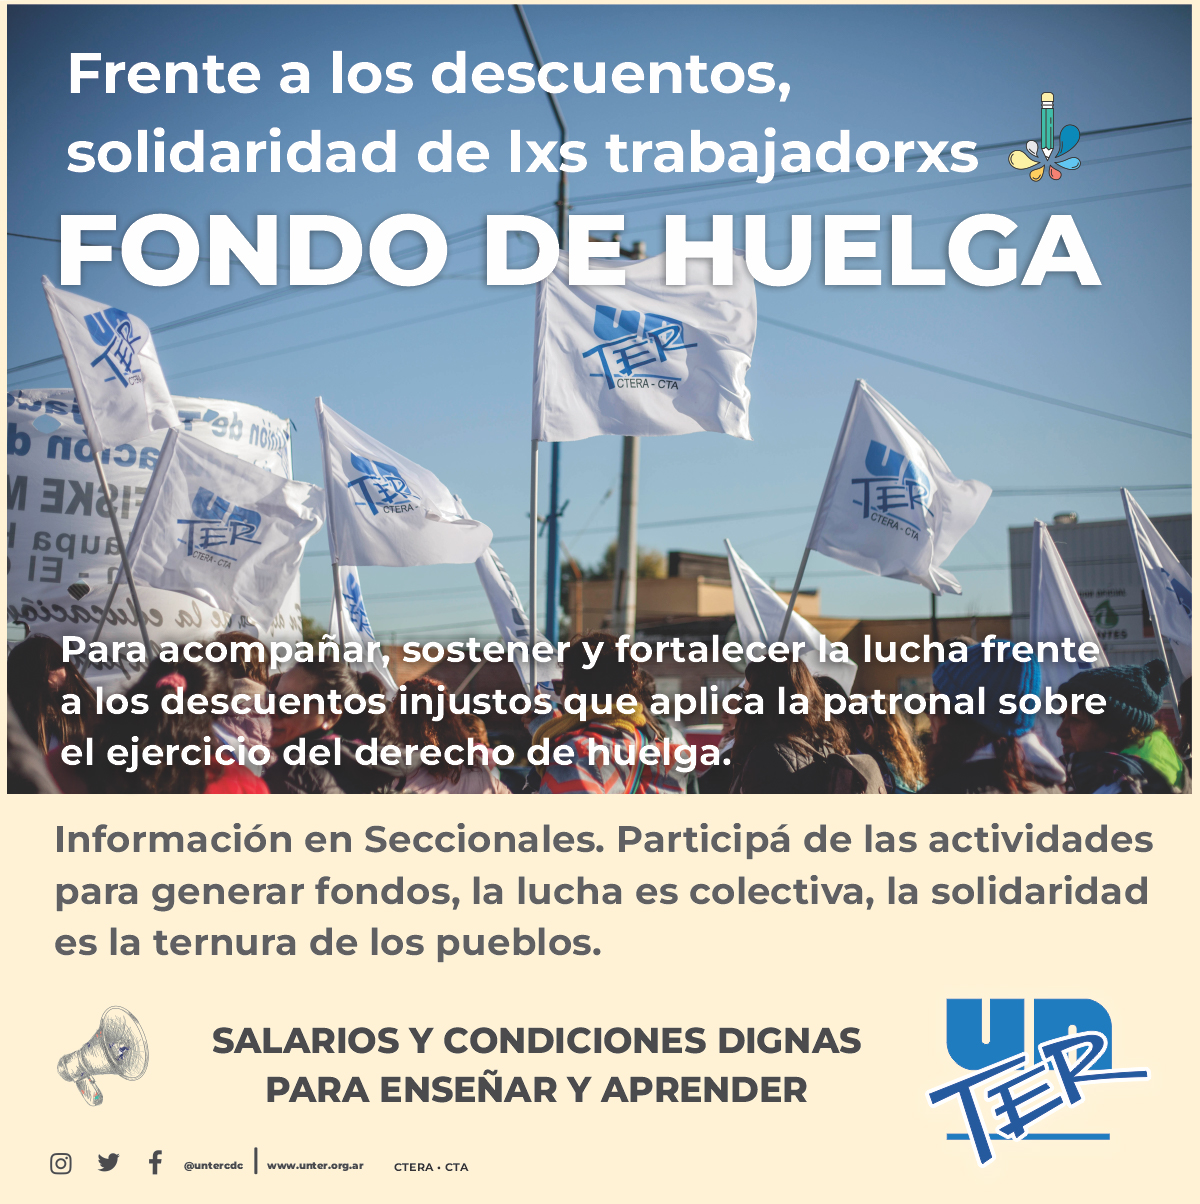 En este momento estás viendo Fondo de huelga: Frente a los descuentos, solidaridad de lxs trabajadorxs